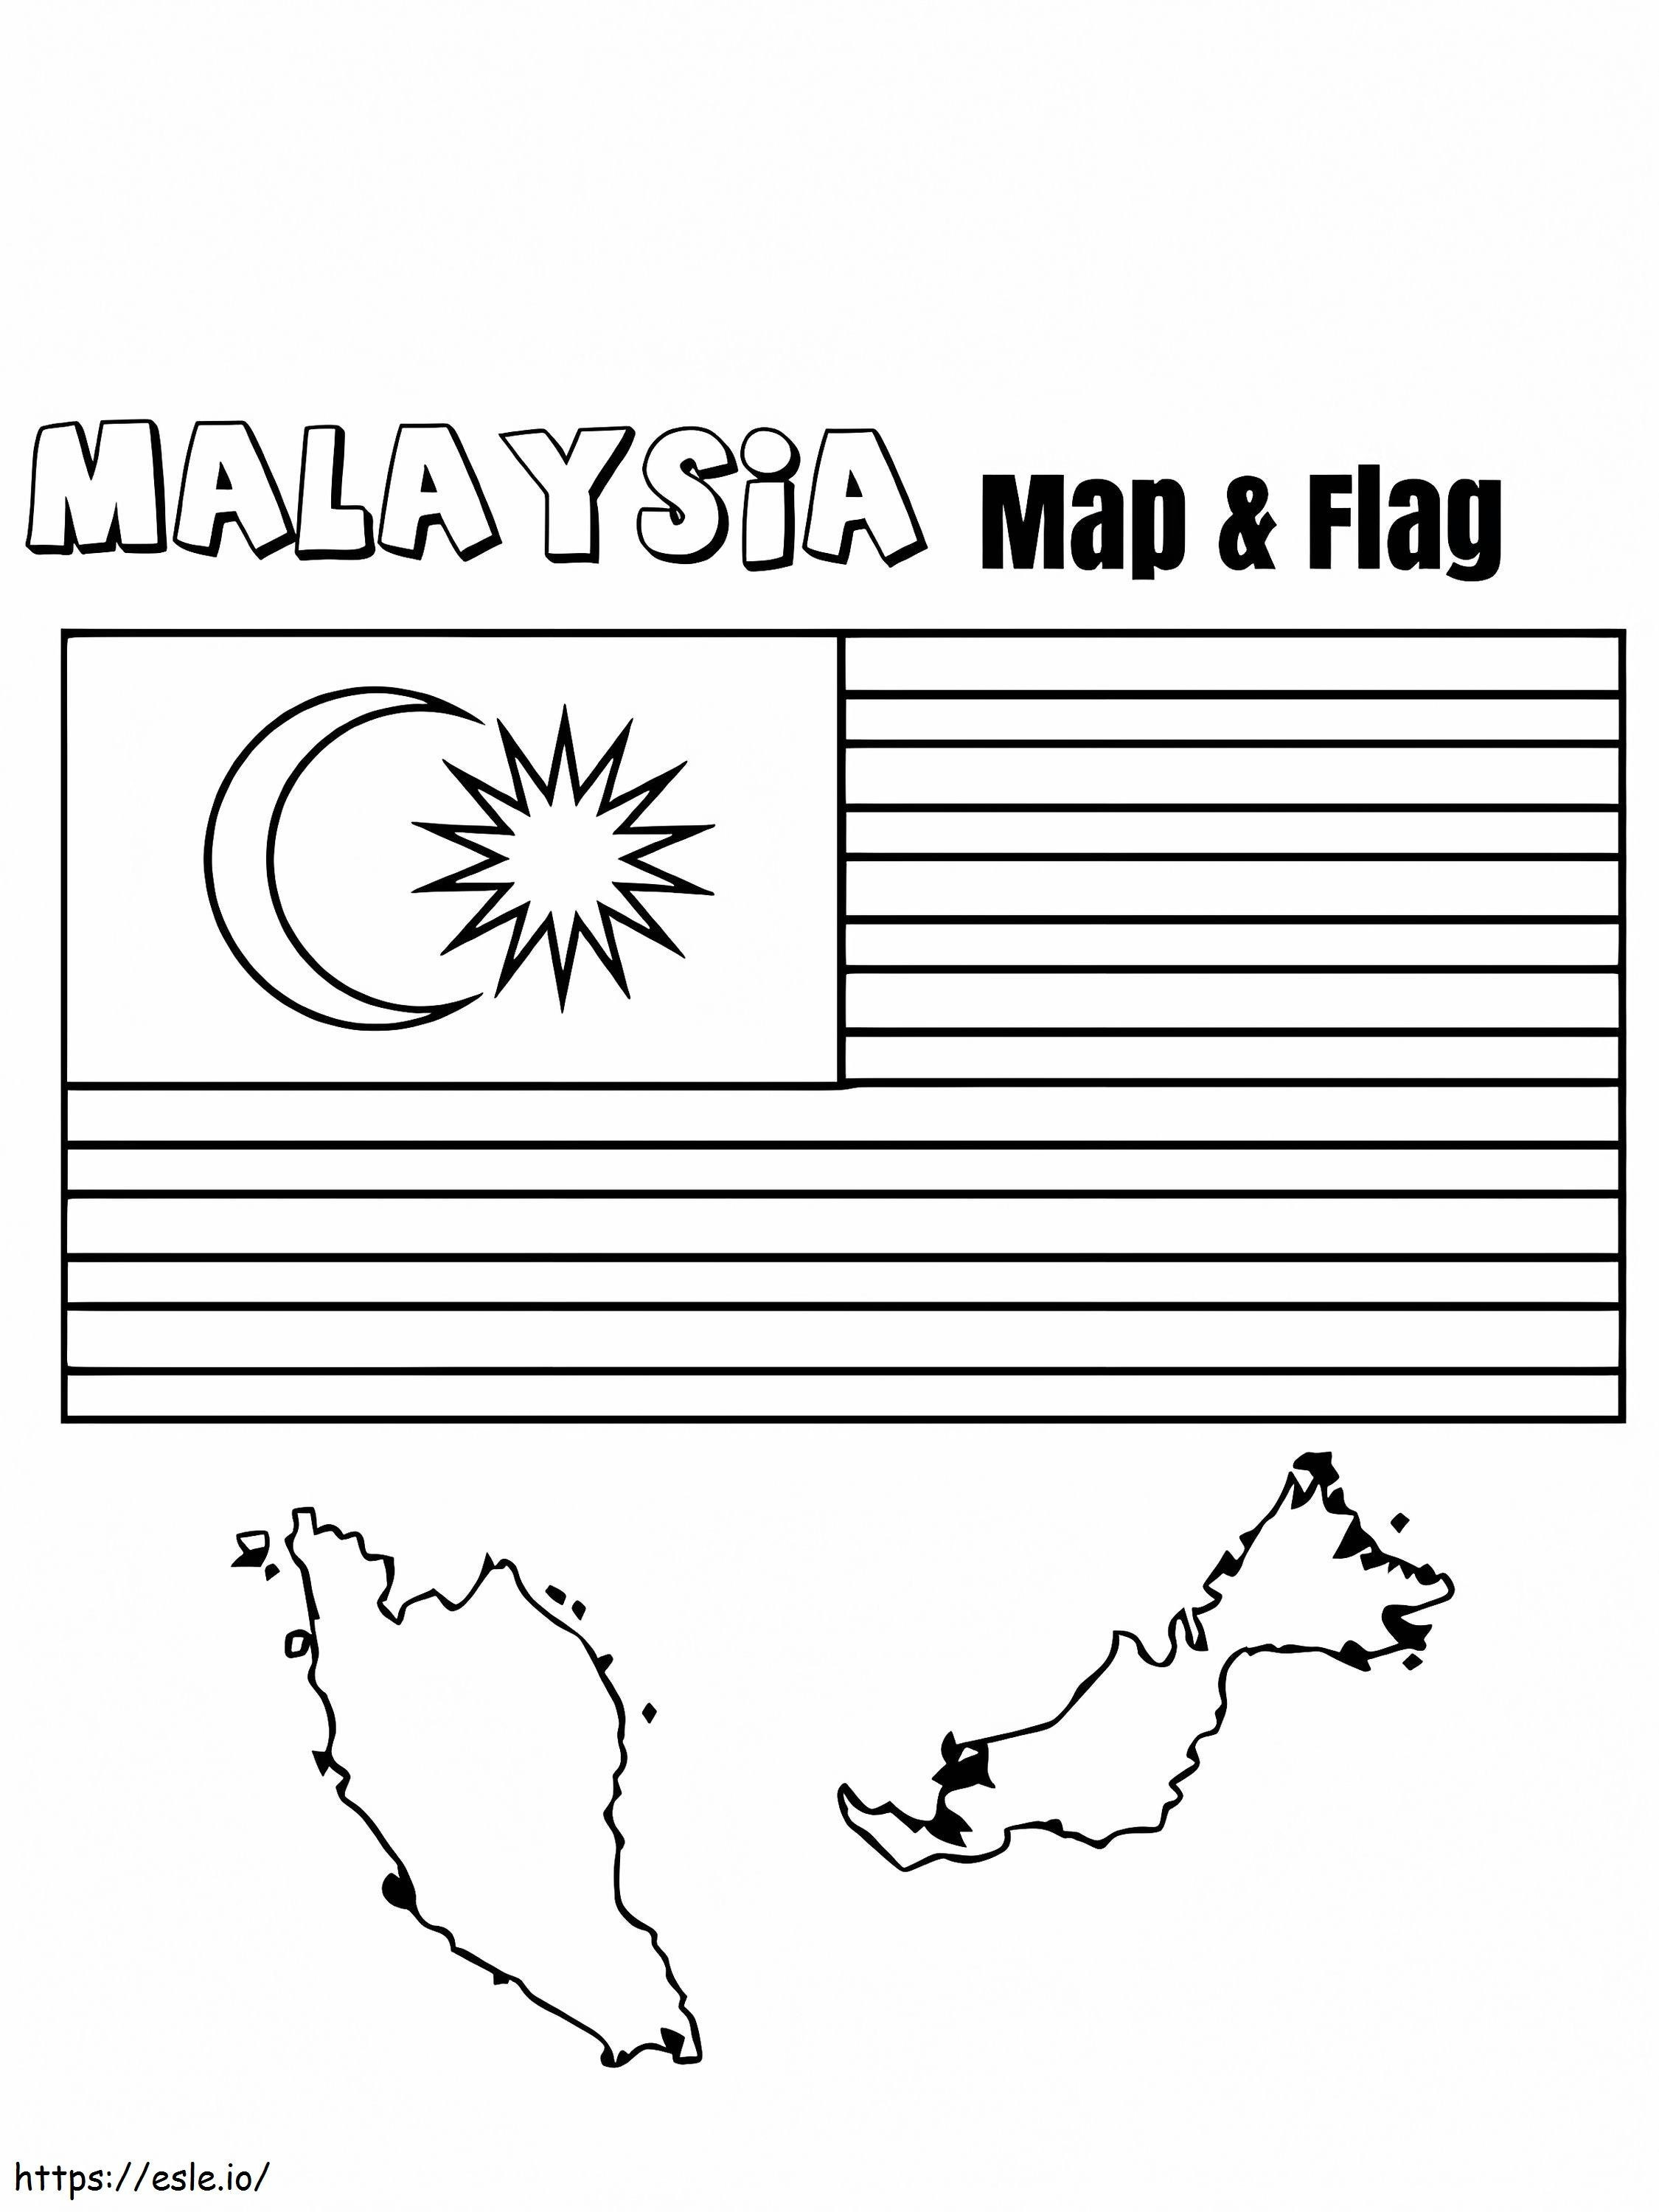 Bandeira e mapa da Malásia para colorir